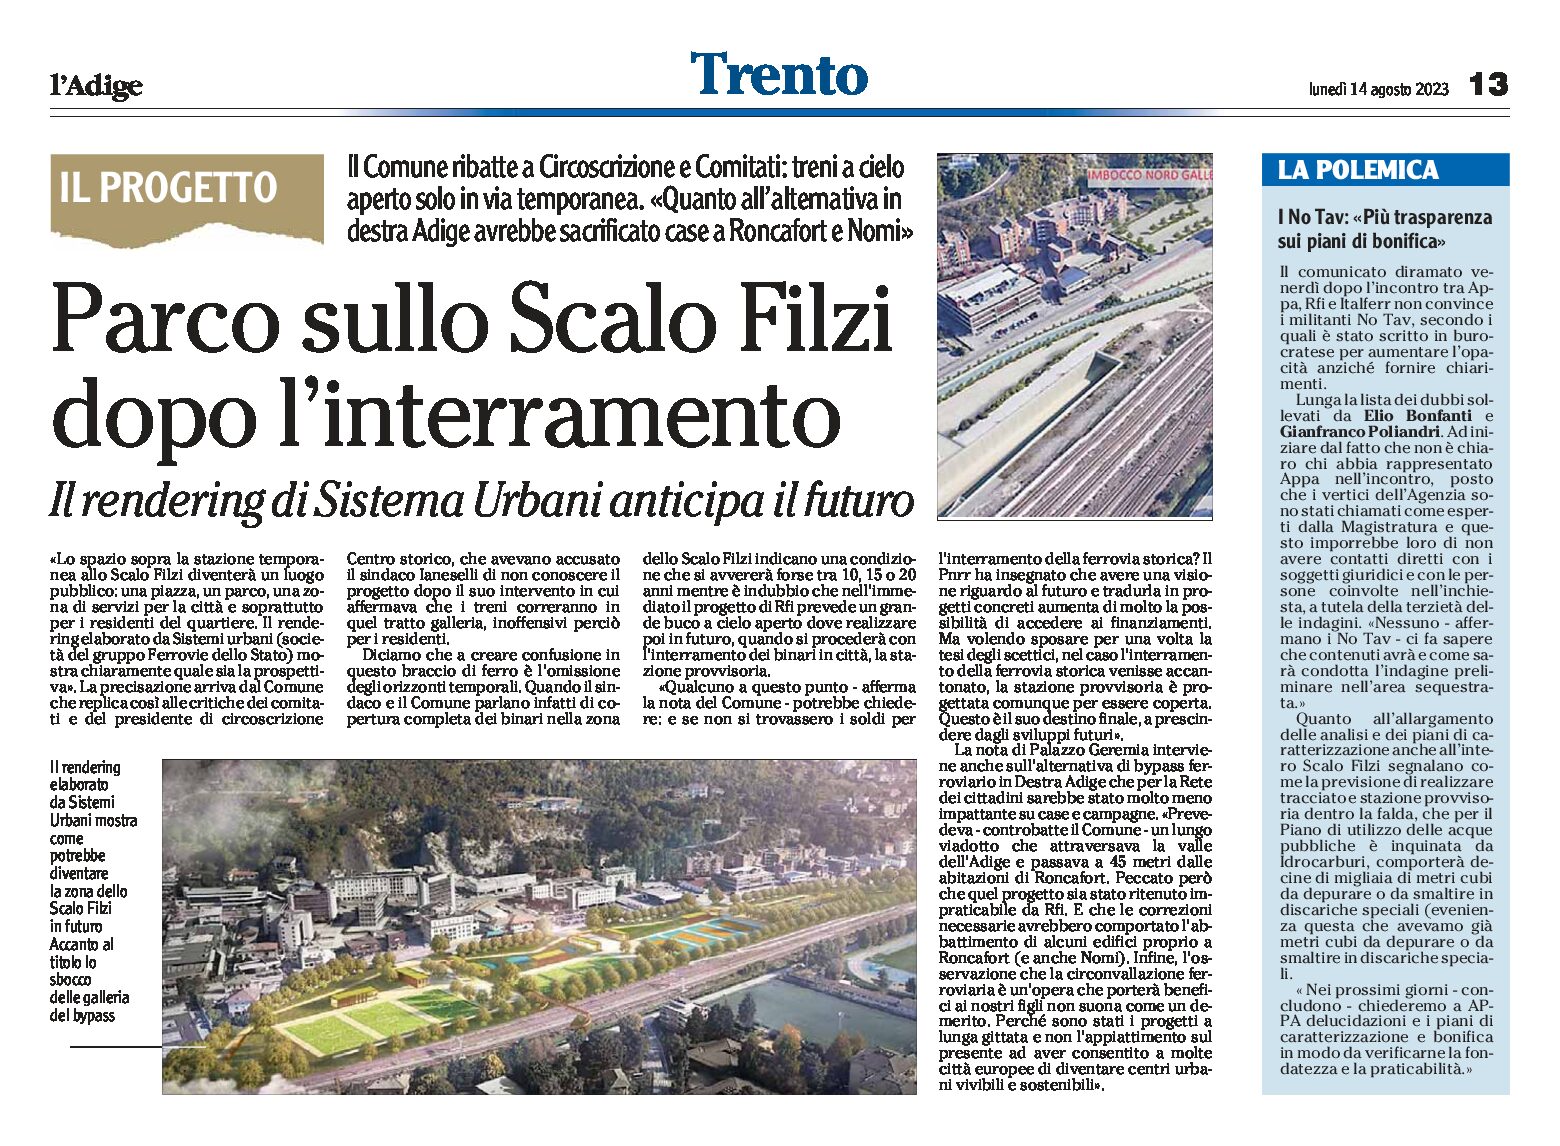 Trento, il Comune ribatte: Parco sullo Scalo Filzi dopo l’interramento. Il rendering anticipa il futuro